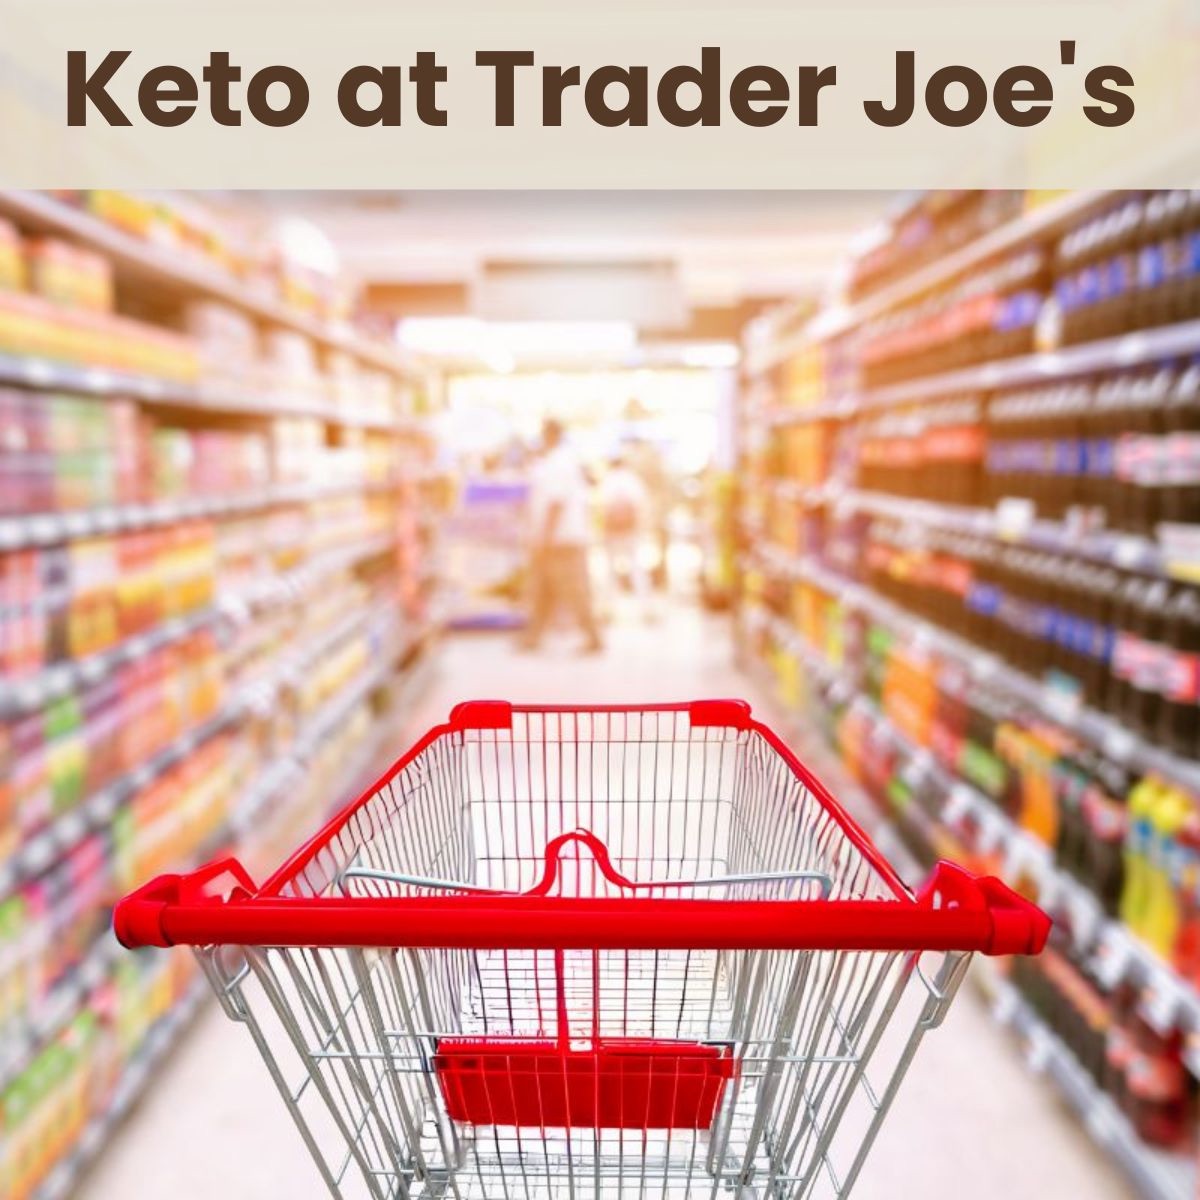 Everything Keto at Trader Joe’s